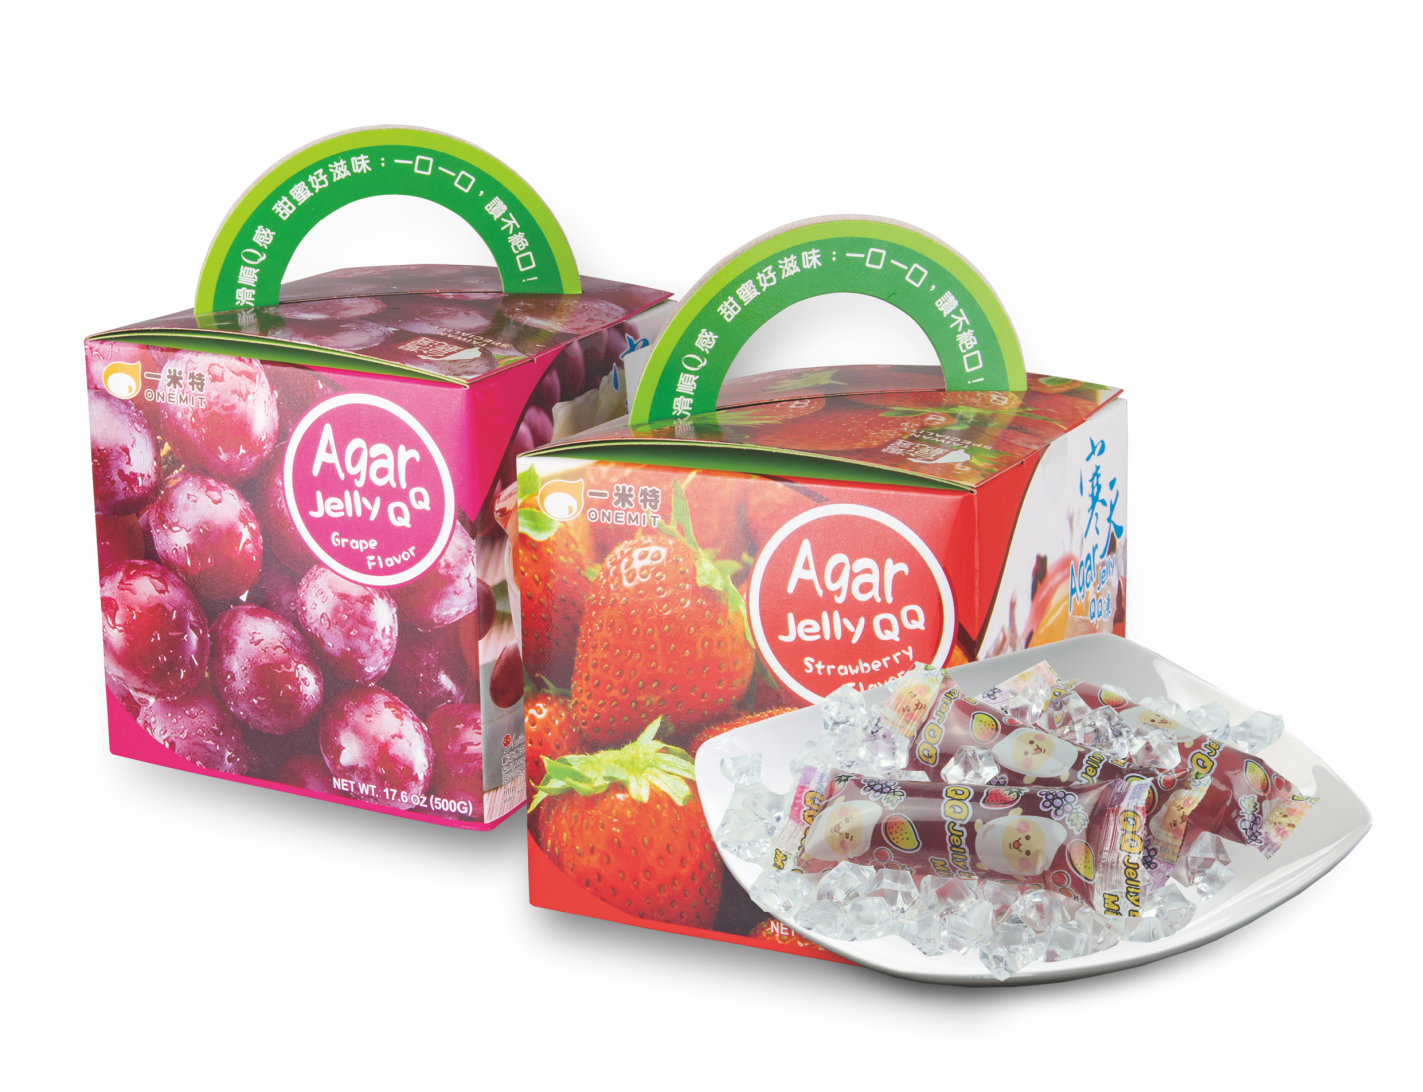 寒天Jelly QQ凍禮盒<br>Agar Jelly QQ Gift Box  |產品資訊|果凍/布丁